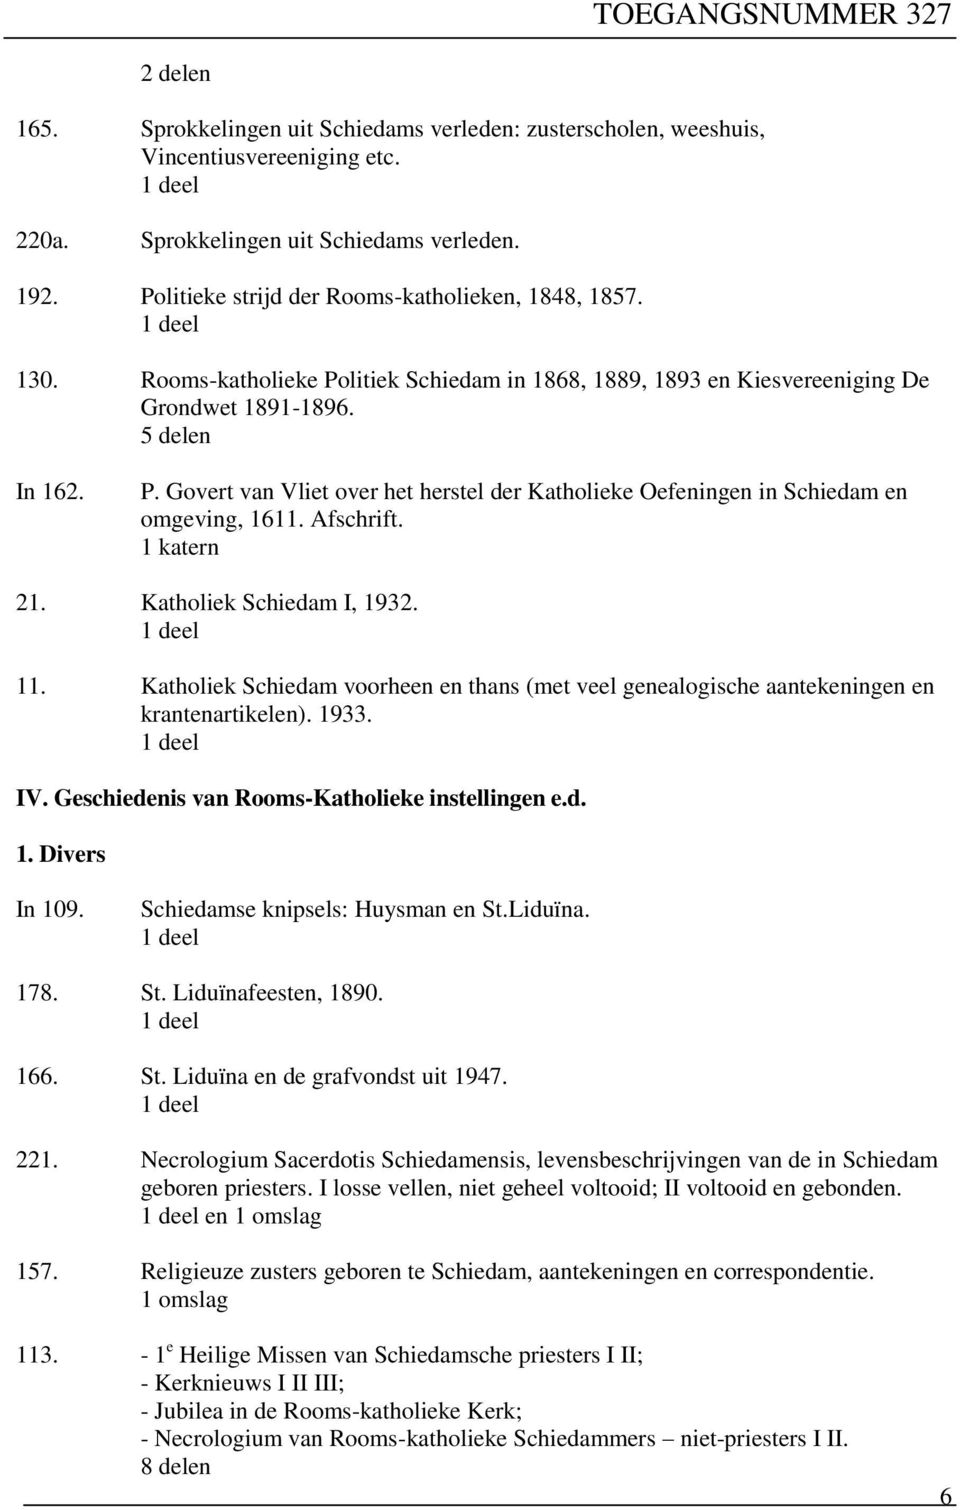 Afschrift. 1 katern 21. Katholiek Schiedam I, 1932. 11. Katholiek Schiedam voorheen en thans (met veel genealogische aantekeningen en krantenartikelen). 1933. IV.